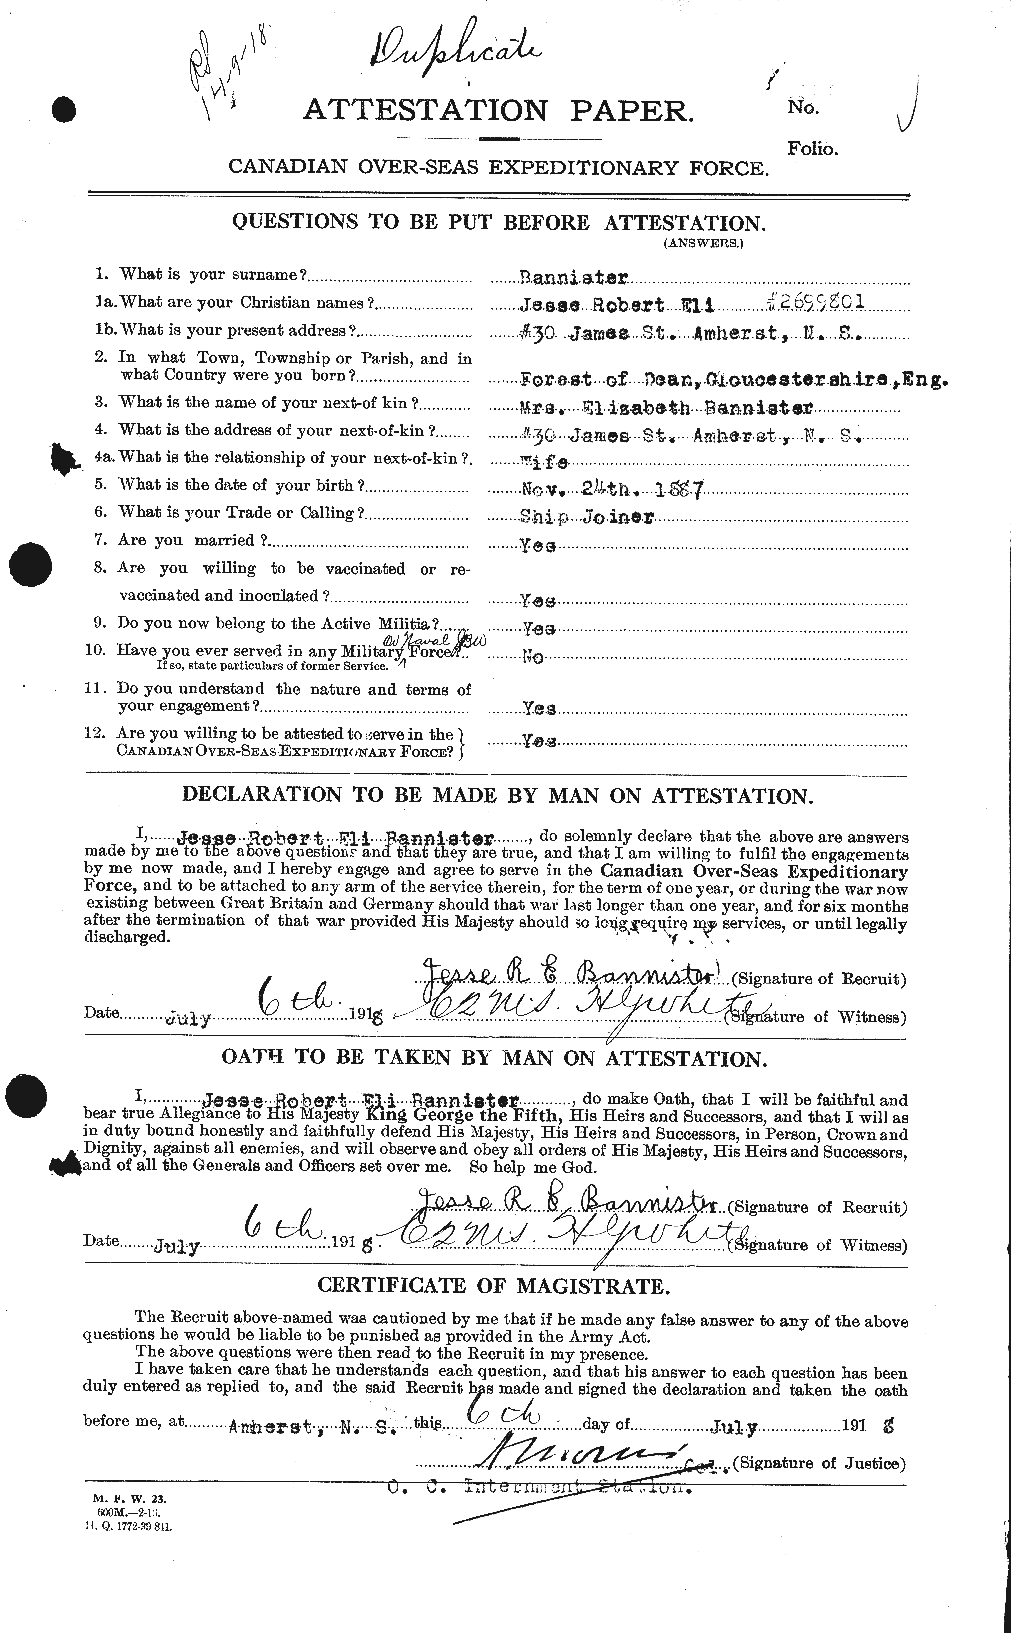 Dossiers du Personnel de la Première Guerre mondiale - CEC 224779a